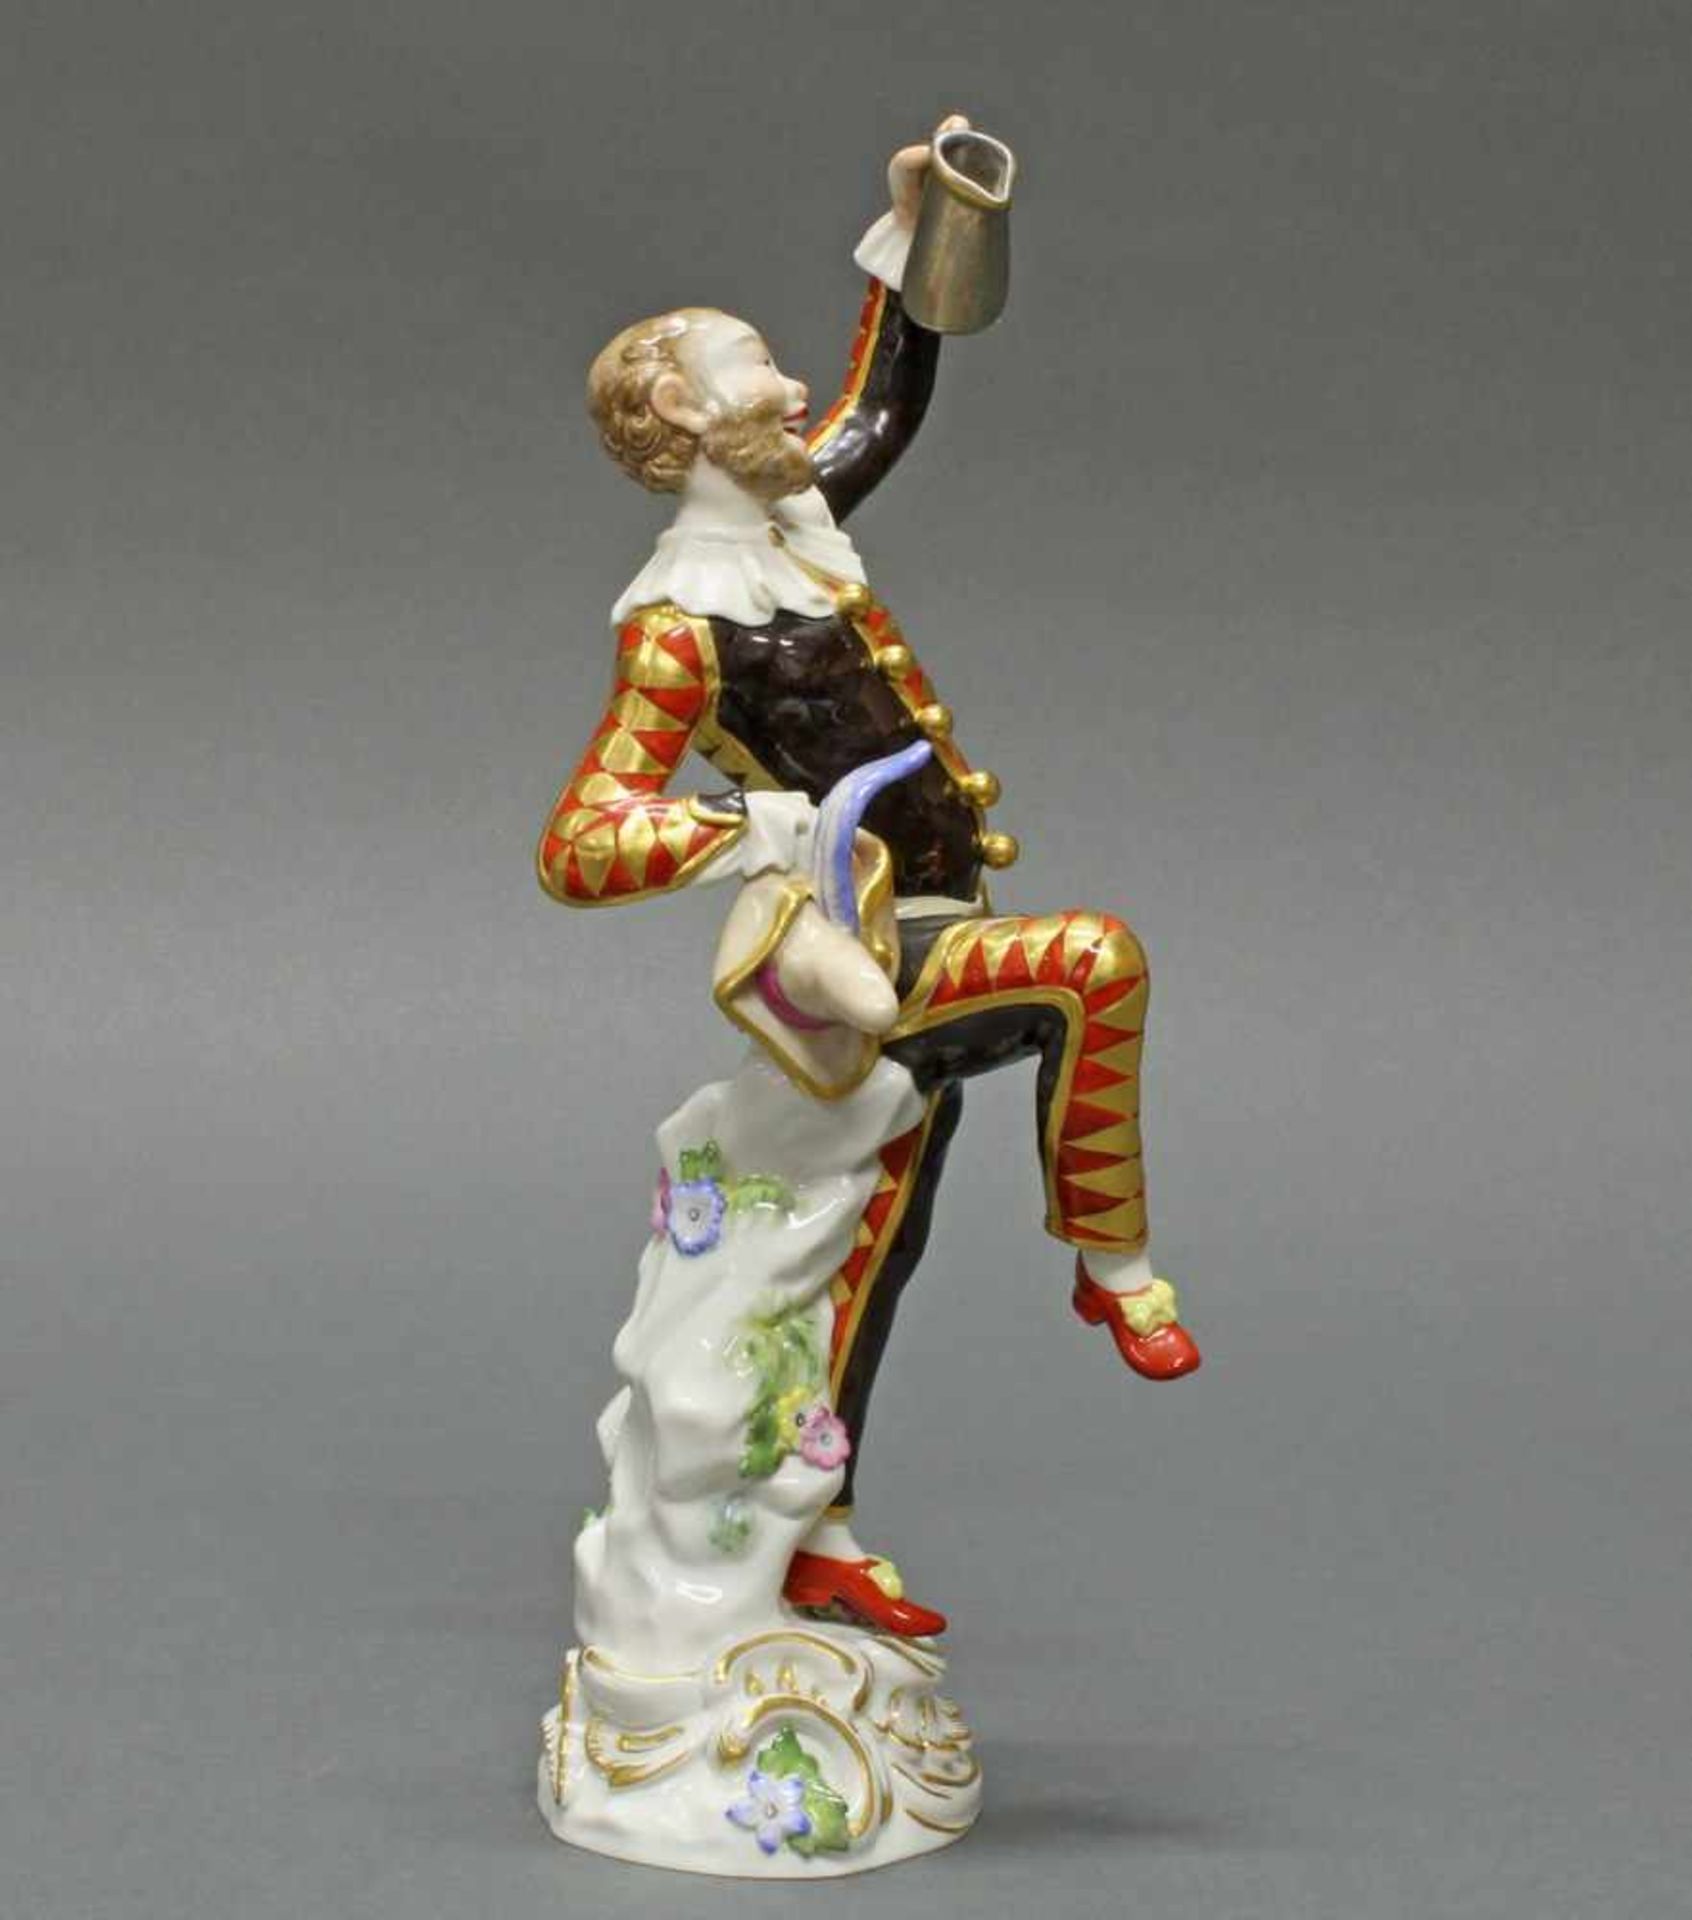 Porzellanfigur, "Harlekin mit Kanne", Meissen, Schwertermarke, 1. Wahl, Modellnummer 64551, - Bild 3 aus 8